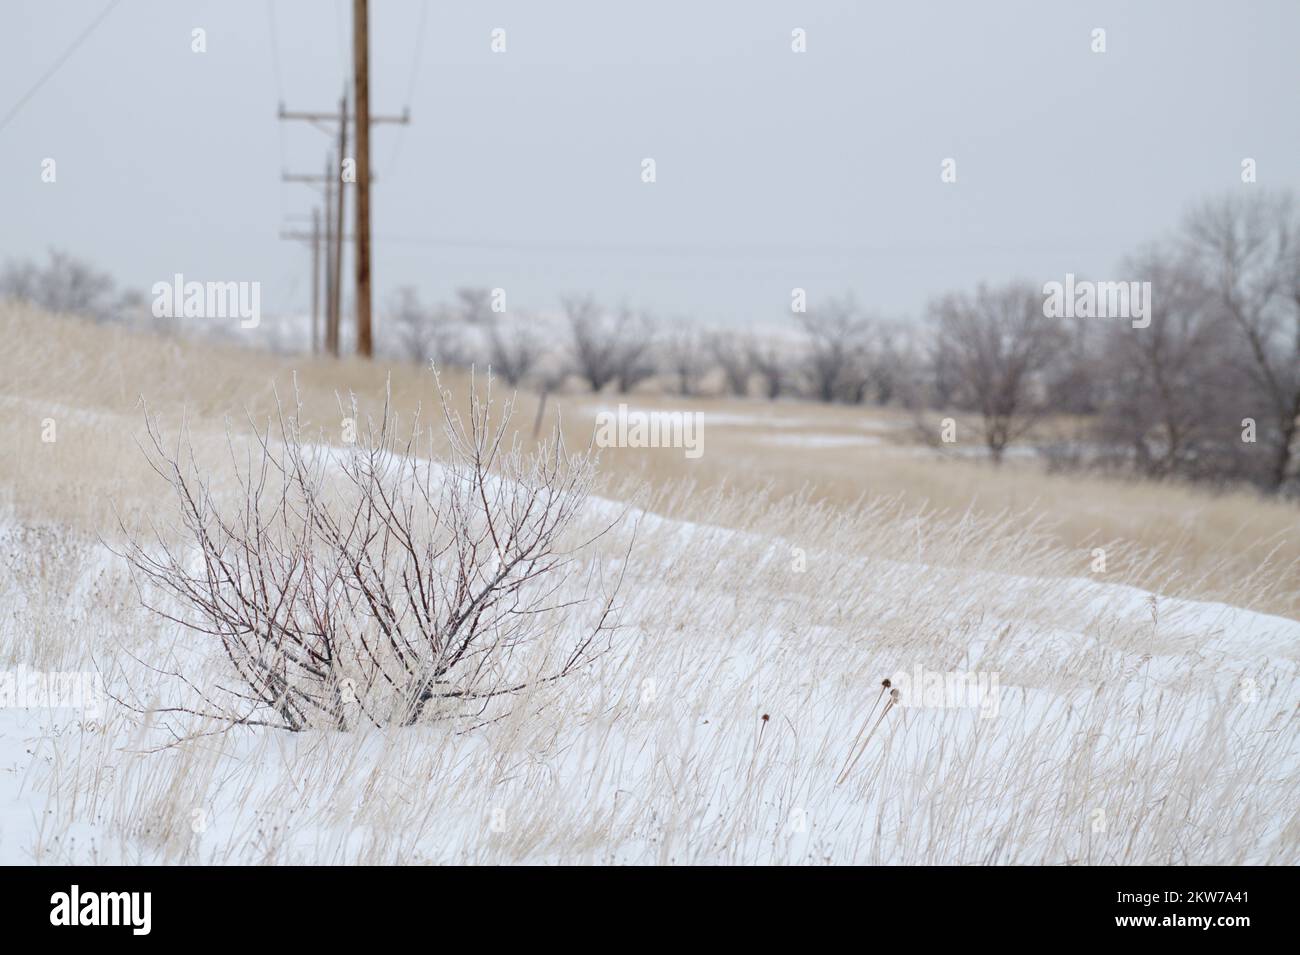 Un piccolo cespuglio a metà inverno nel North Dakota. Questa immagine cattura gli sforzi che tutta la vita compie per superare e adattarsi alle avversità. Foto Stock